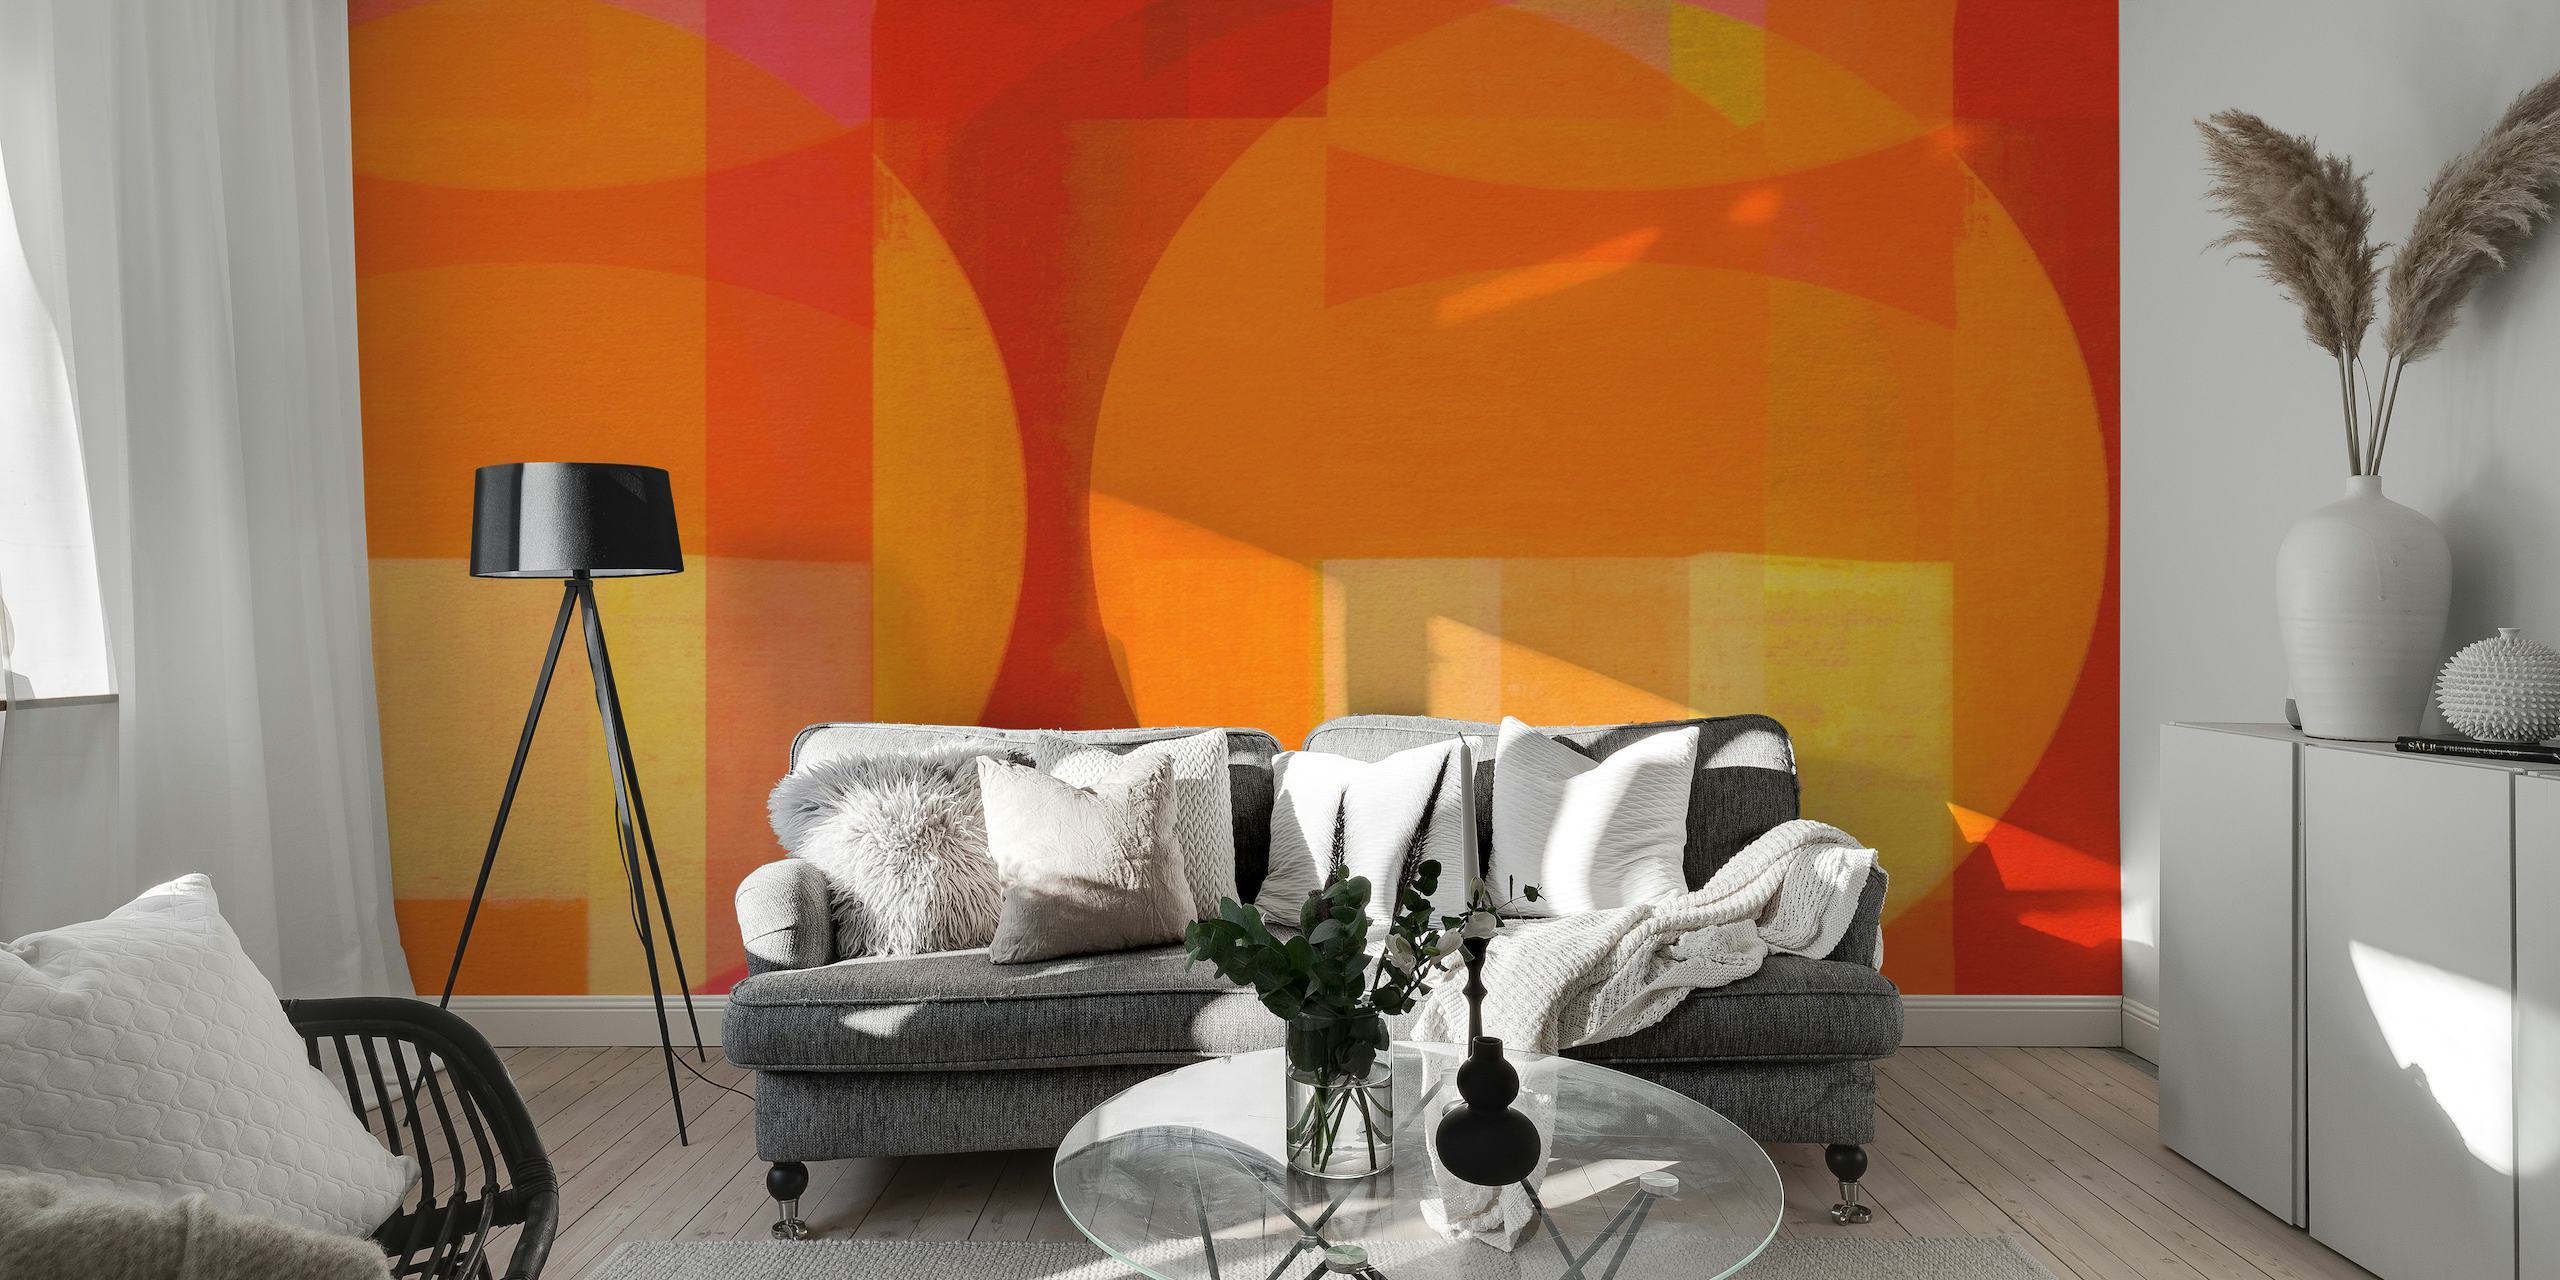 Apstraktna zidna slika u stilu Bauhausa u živahnoj mješavini crvenih, narančastih i žutih geometrijskih oblika.